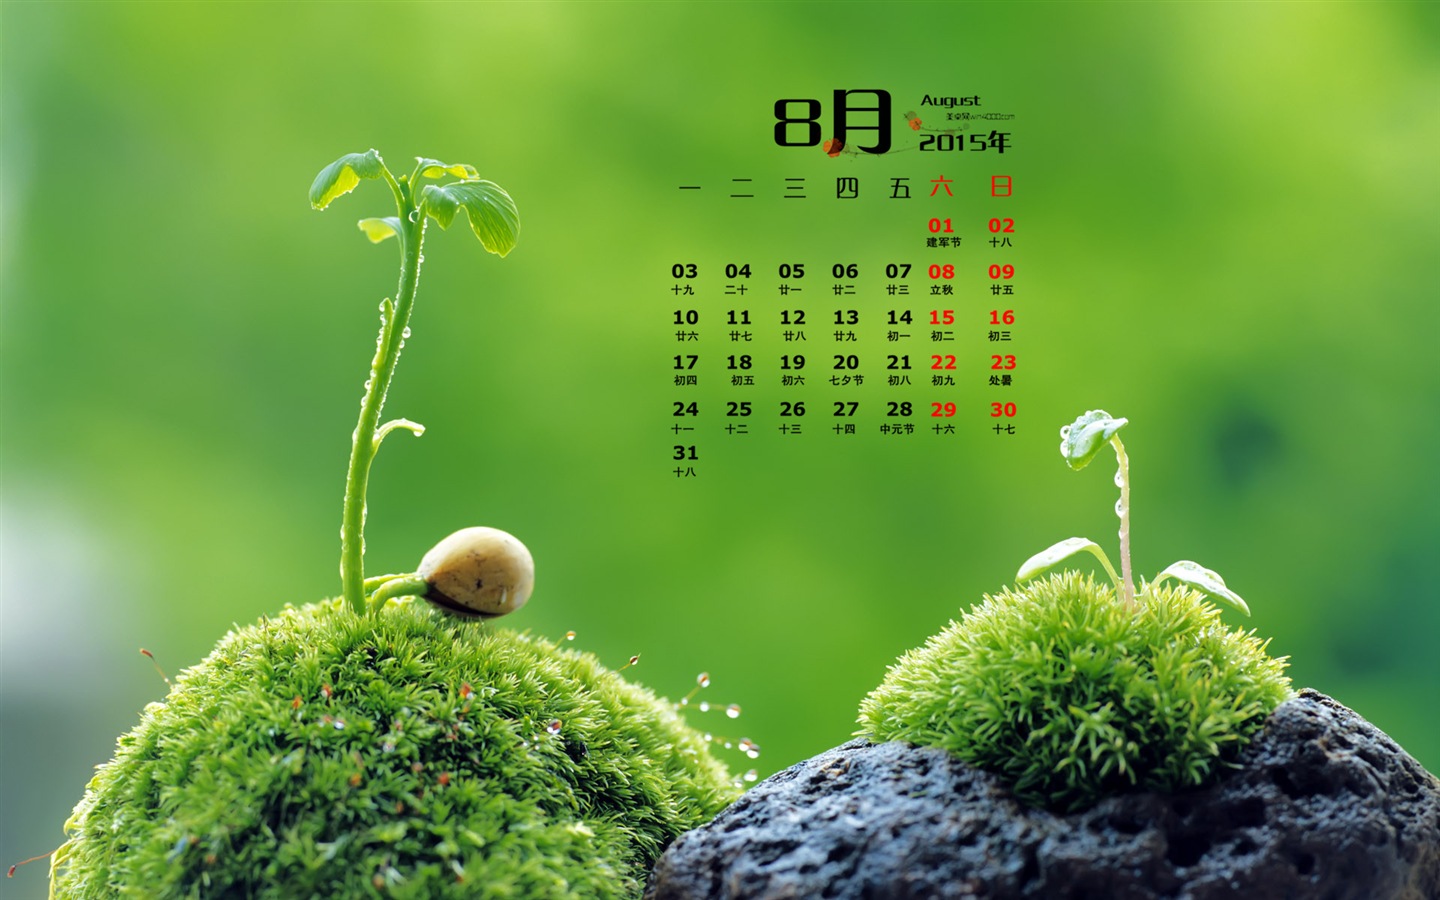 August 2015 calendar wallpaper (1) #16 - 1440x900